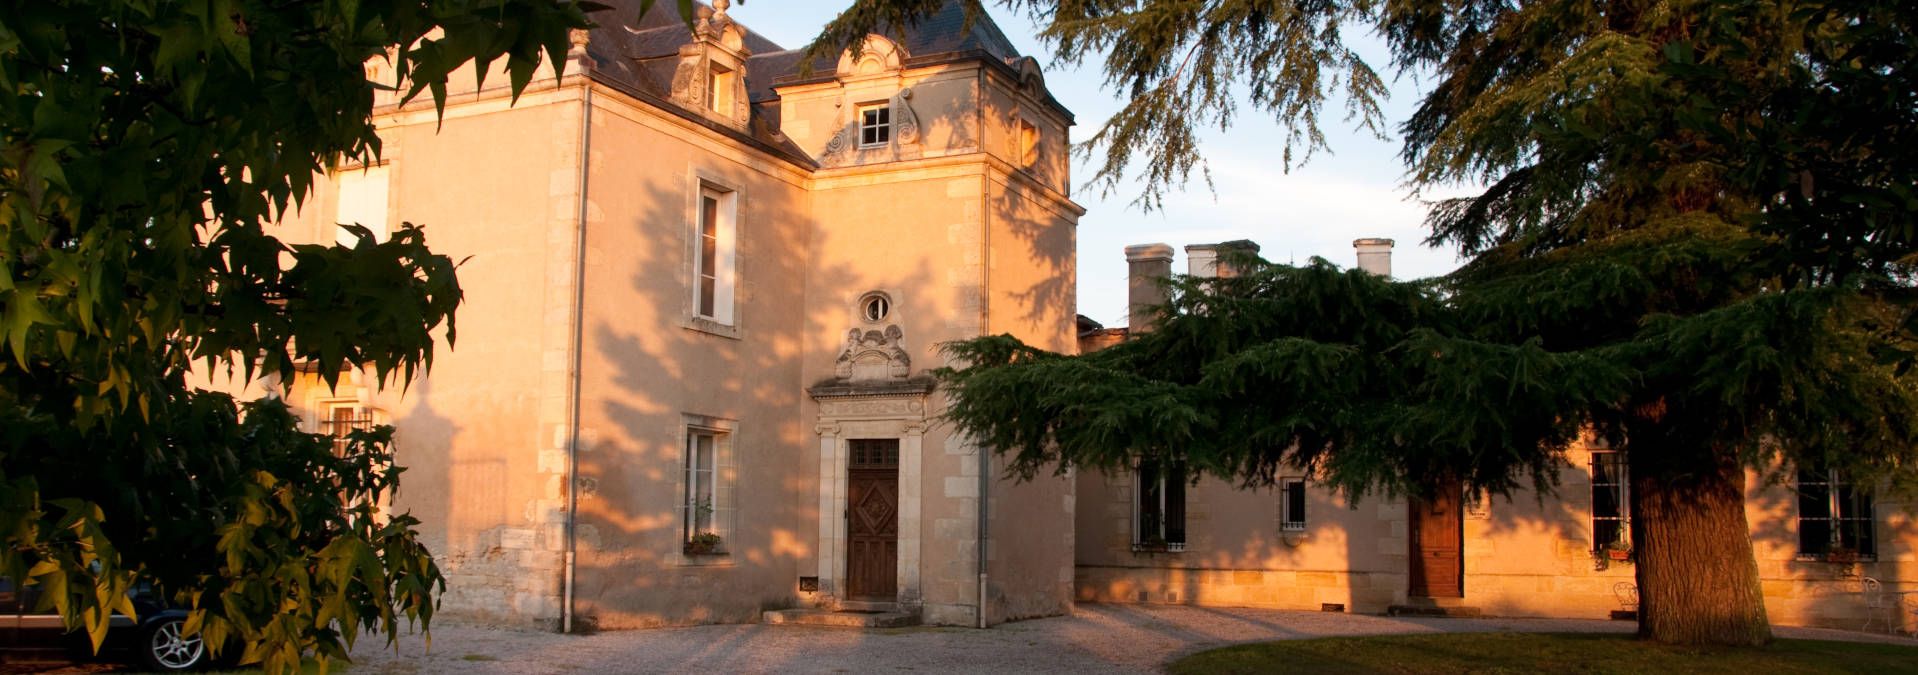 Château La Haye - Rue des Vignerons